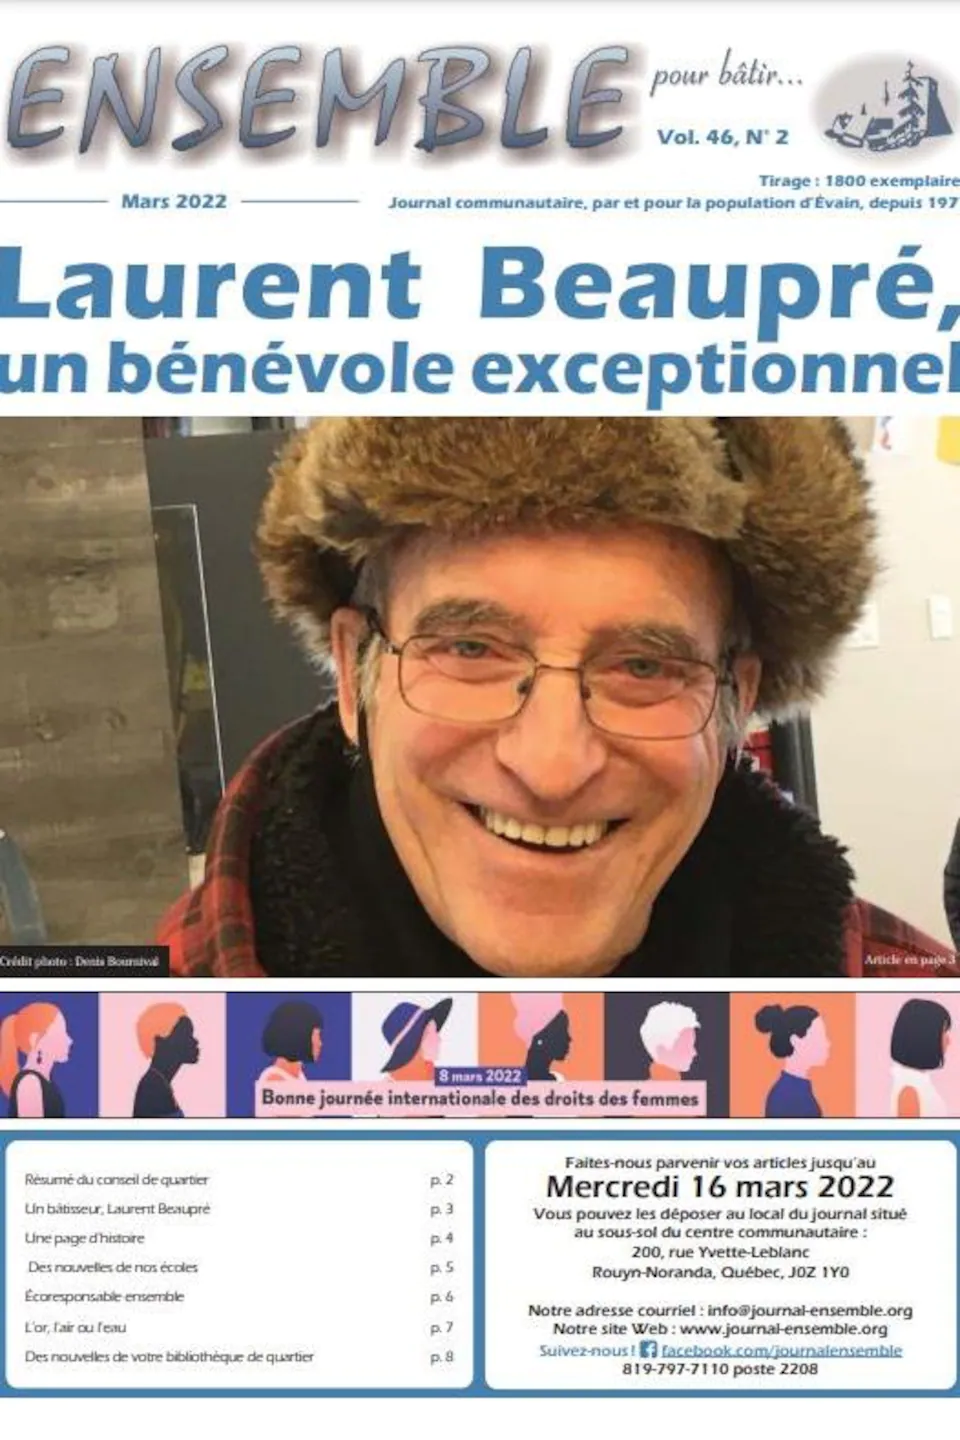 Laurent Beaupré est présenté comme un bénévole exceptionnel dans le journal communautaire du quartier Évain.